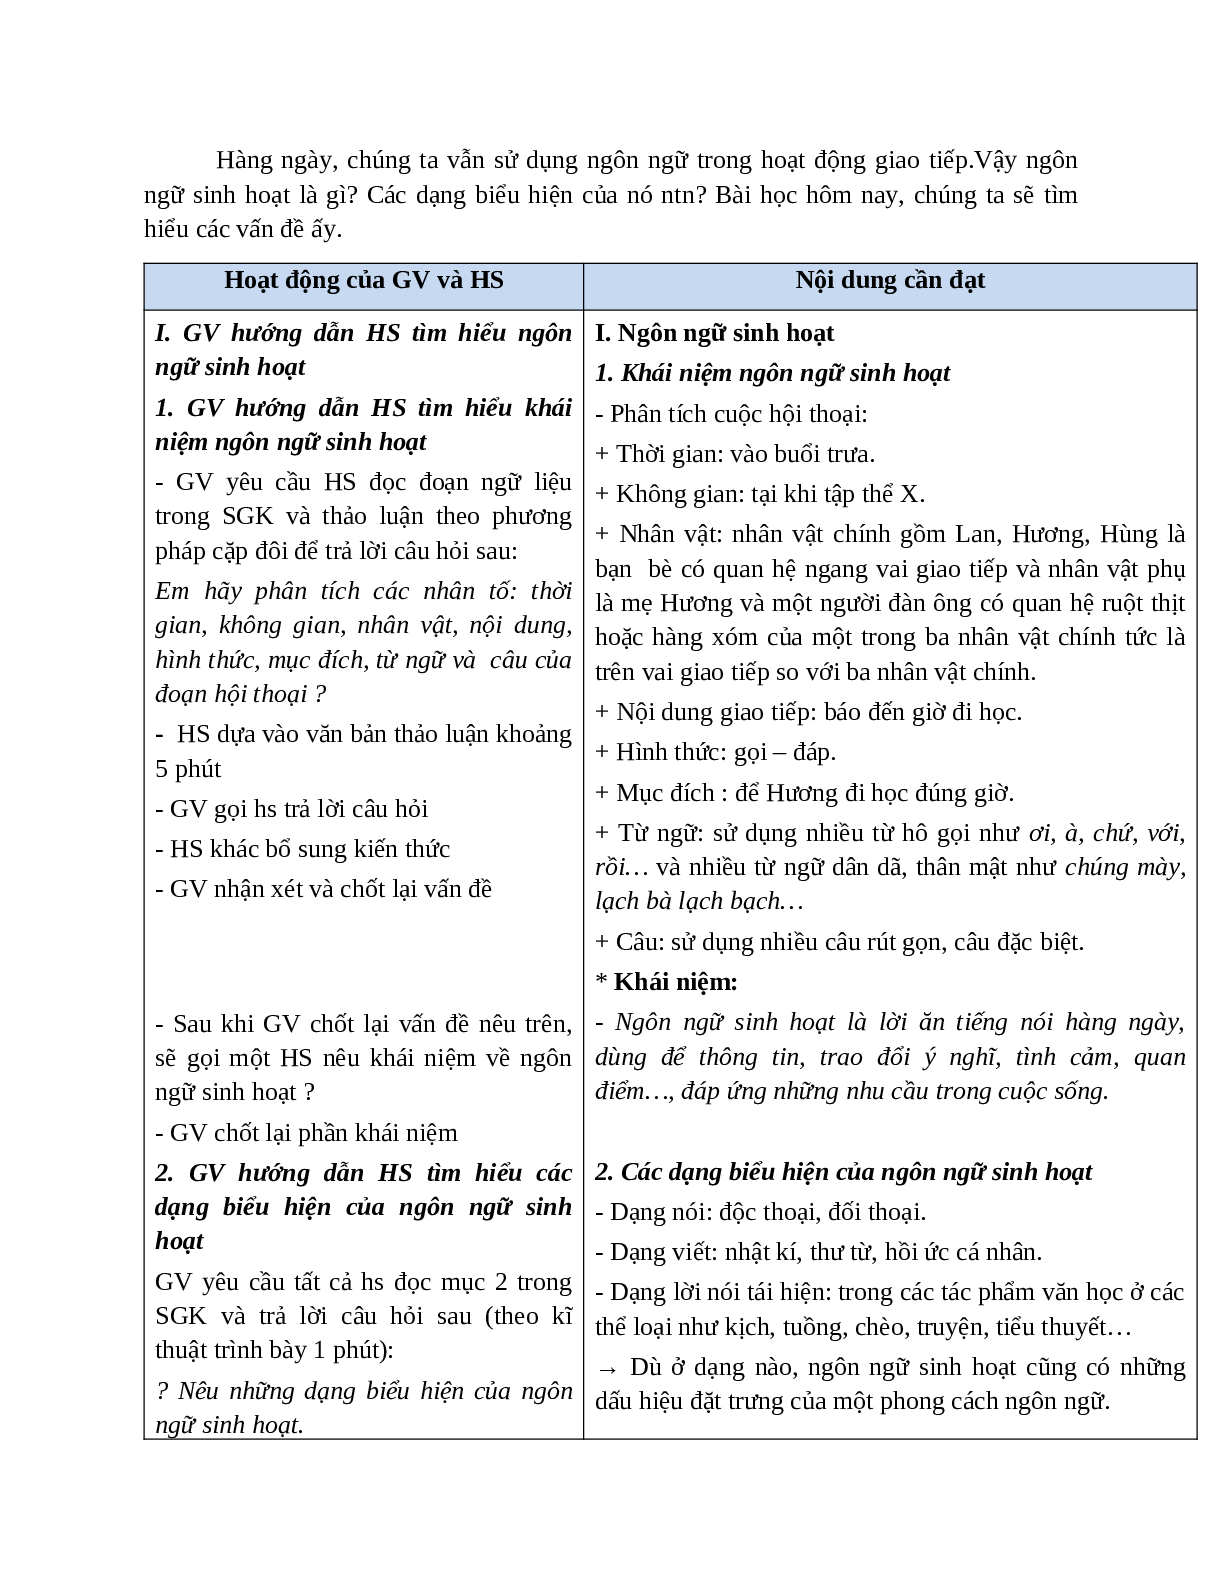 Giáo án Ngữ văn 10 tập 1 bài Phong cách ngôn ngữ sinh hoạt mới nhất (trang 2)